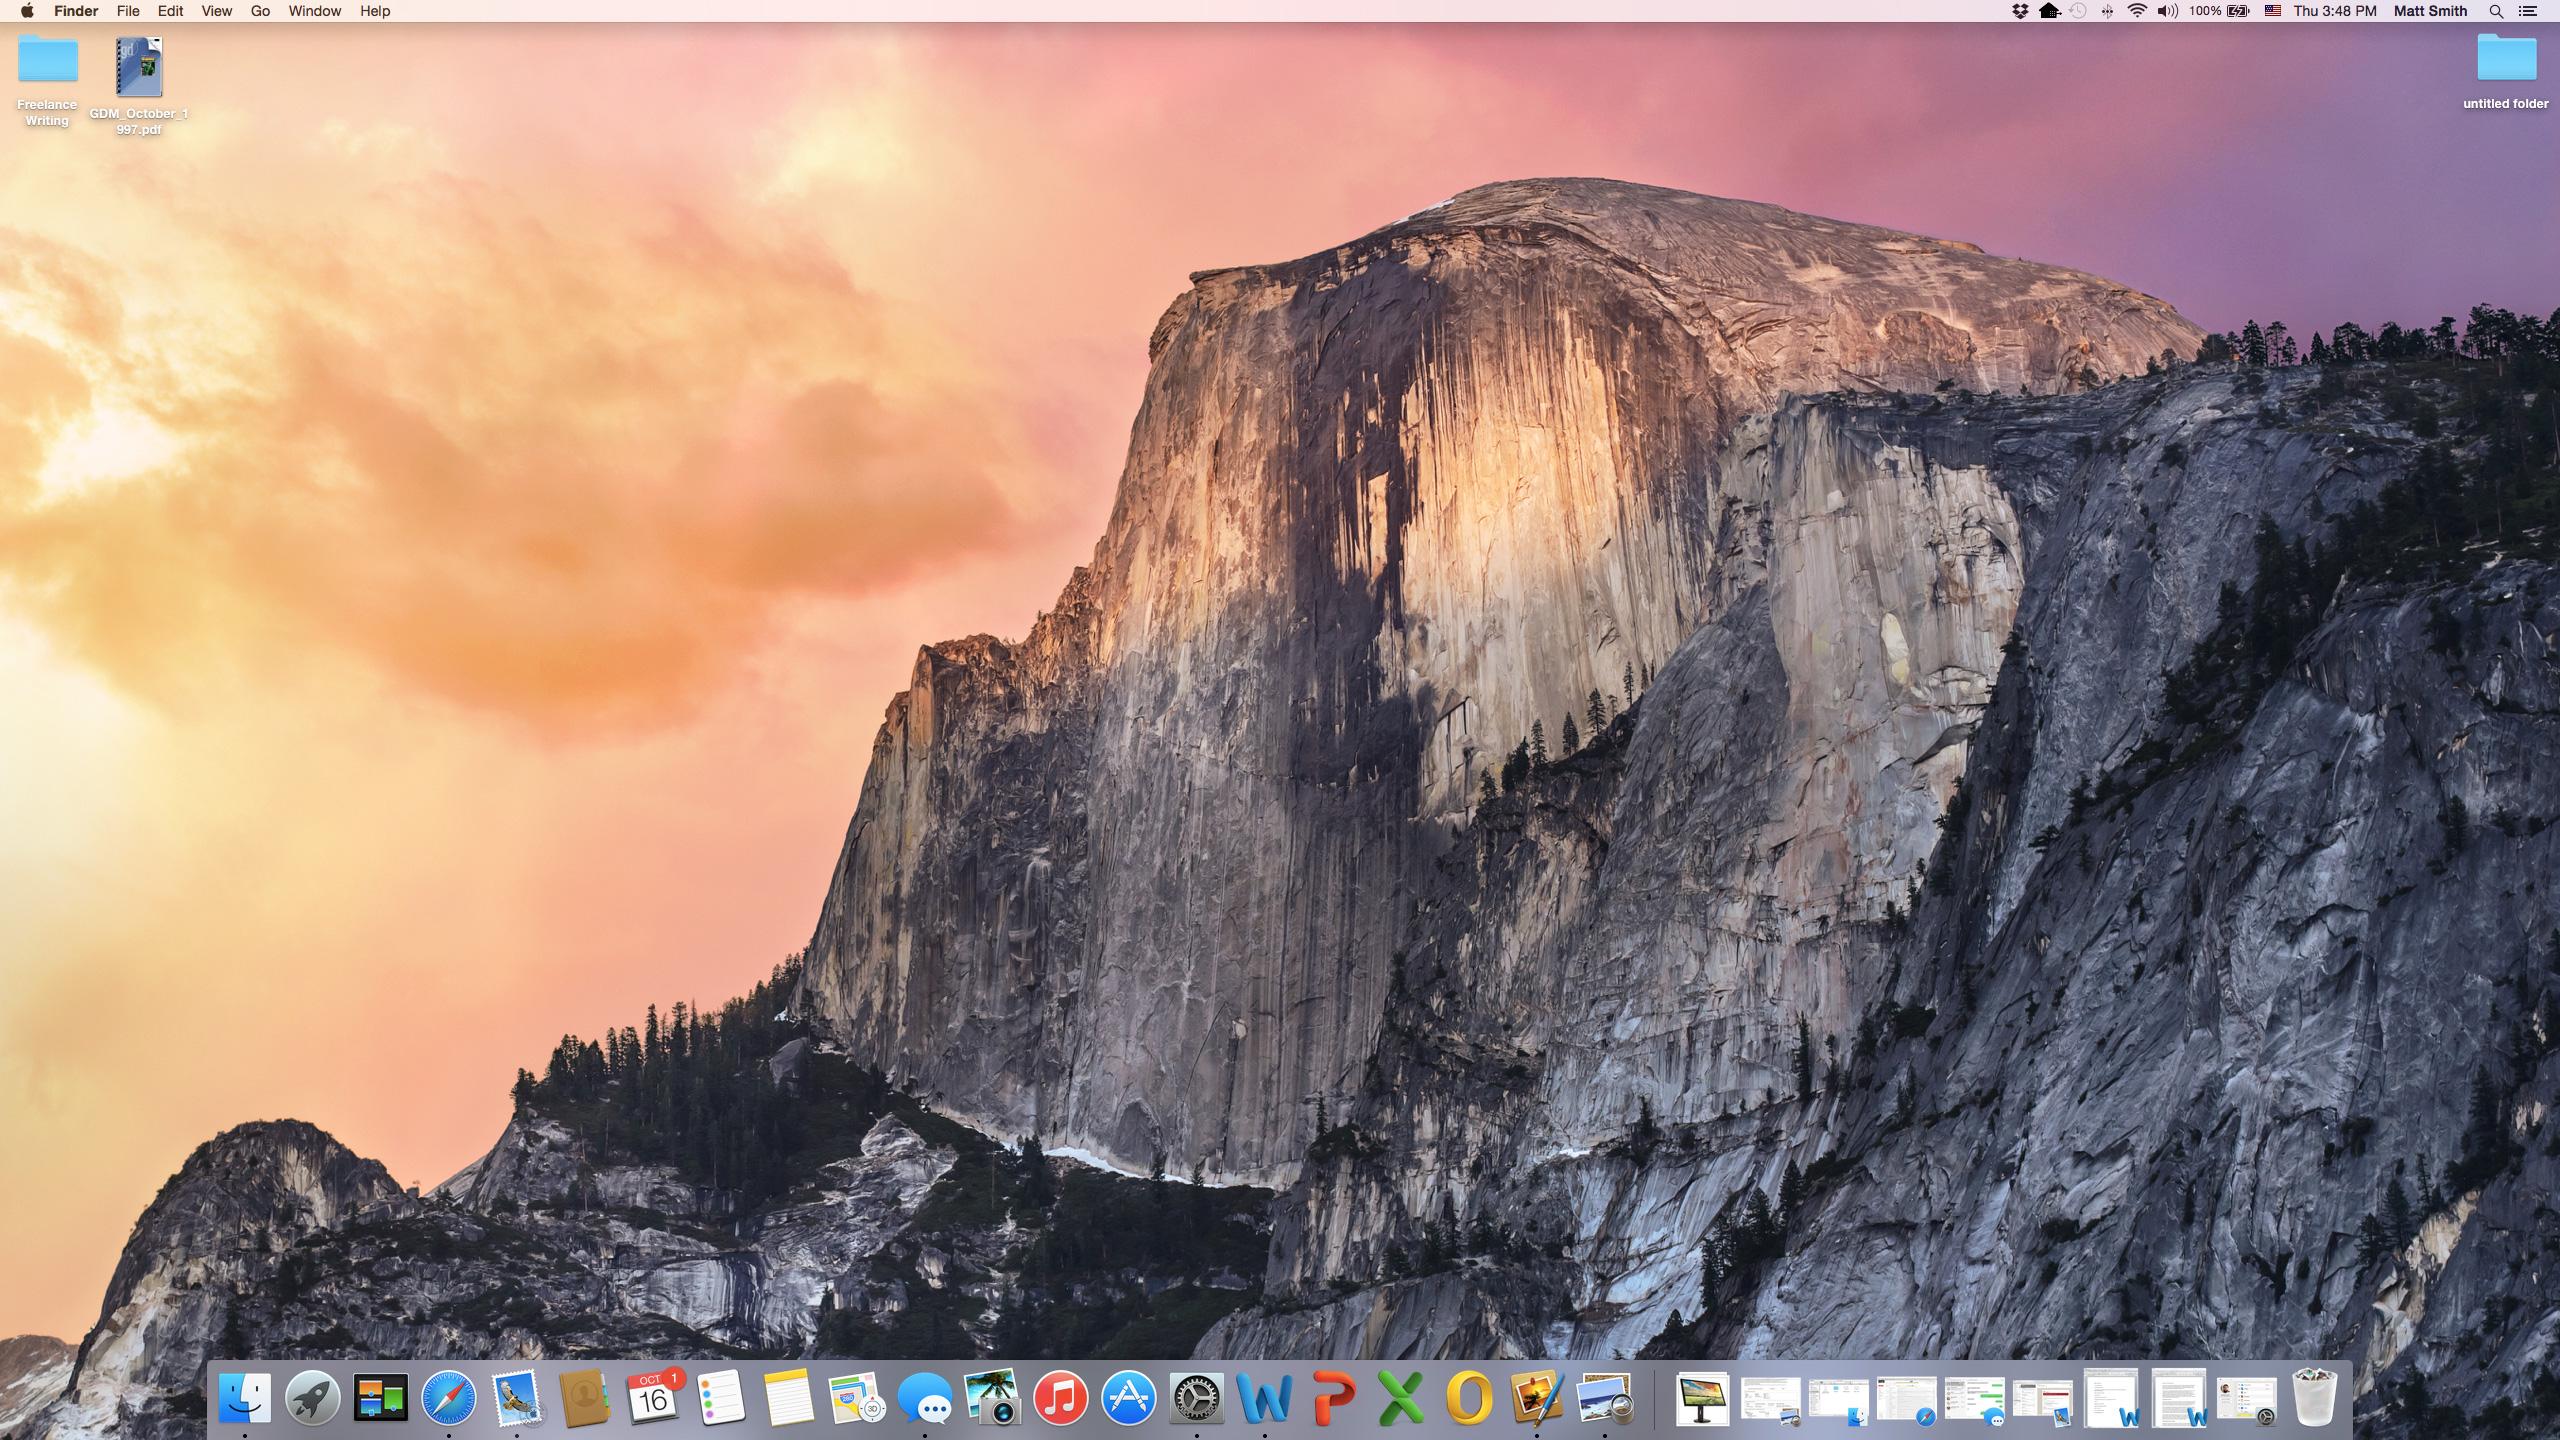 Sistema operacional OS X Yosemite Mac da Apple, com a área de trabalho e vários ícones visíveis.